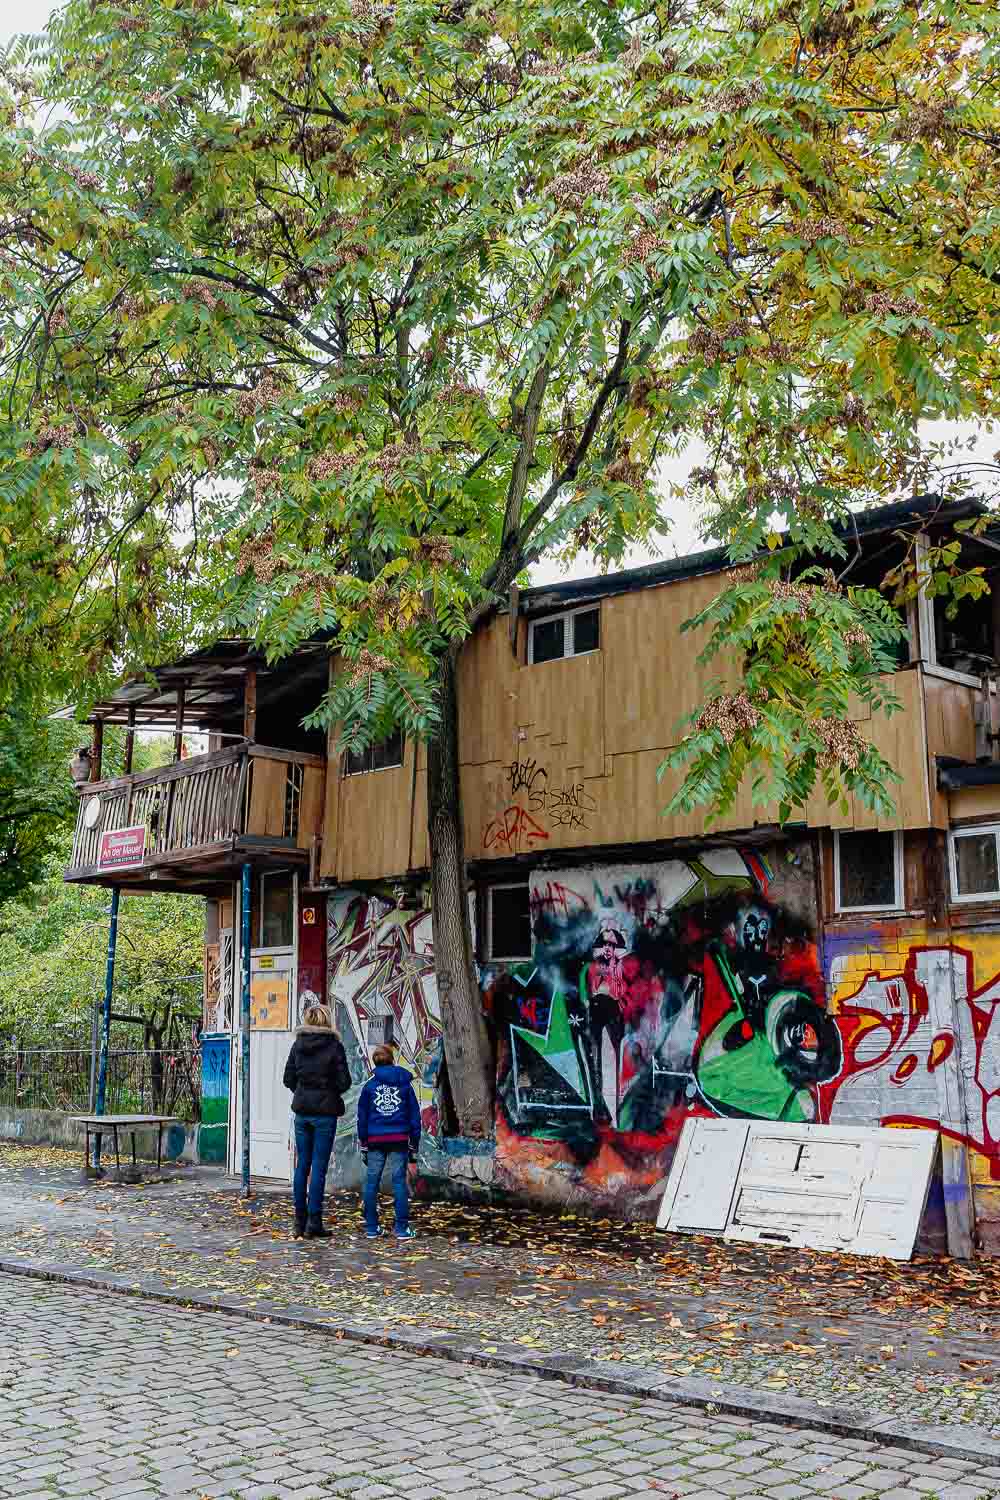 Berlin Graffiti Tour - Sehenswürdigkeiten Alternative Berlin Tours - Berlin Grafitti Tour - die andere Seite von Berlin - Stadtrundgang - Sehenswürdigkeiten Berlin in den Hinterhöfen